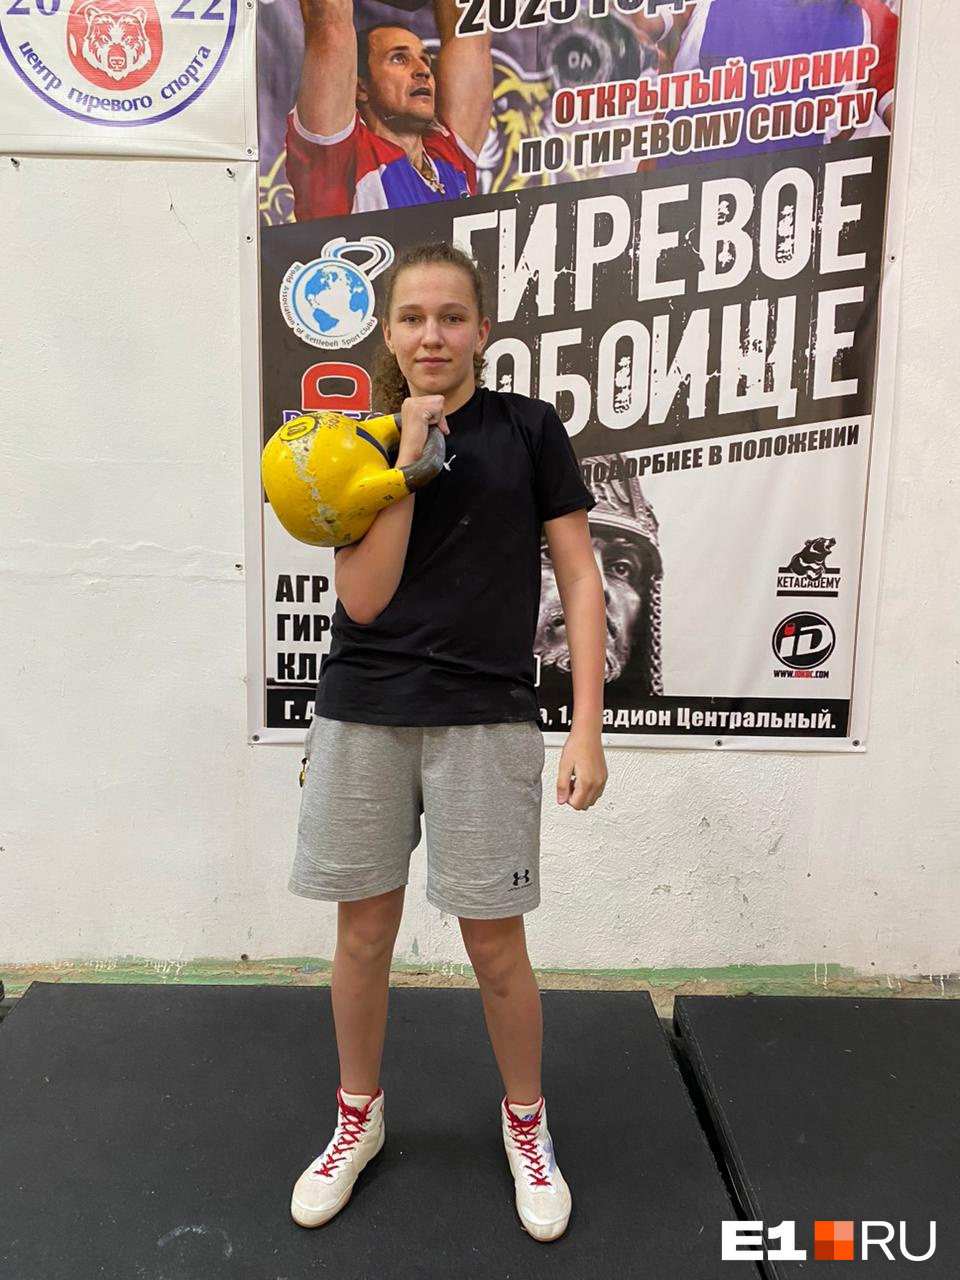 Уральская девочка-силачка установила новый мировой рекорд, подняв гирю 2222 раза! Видео